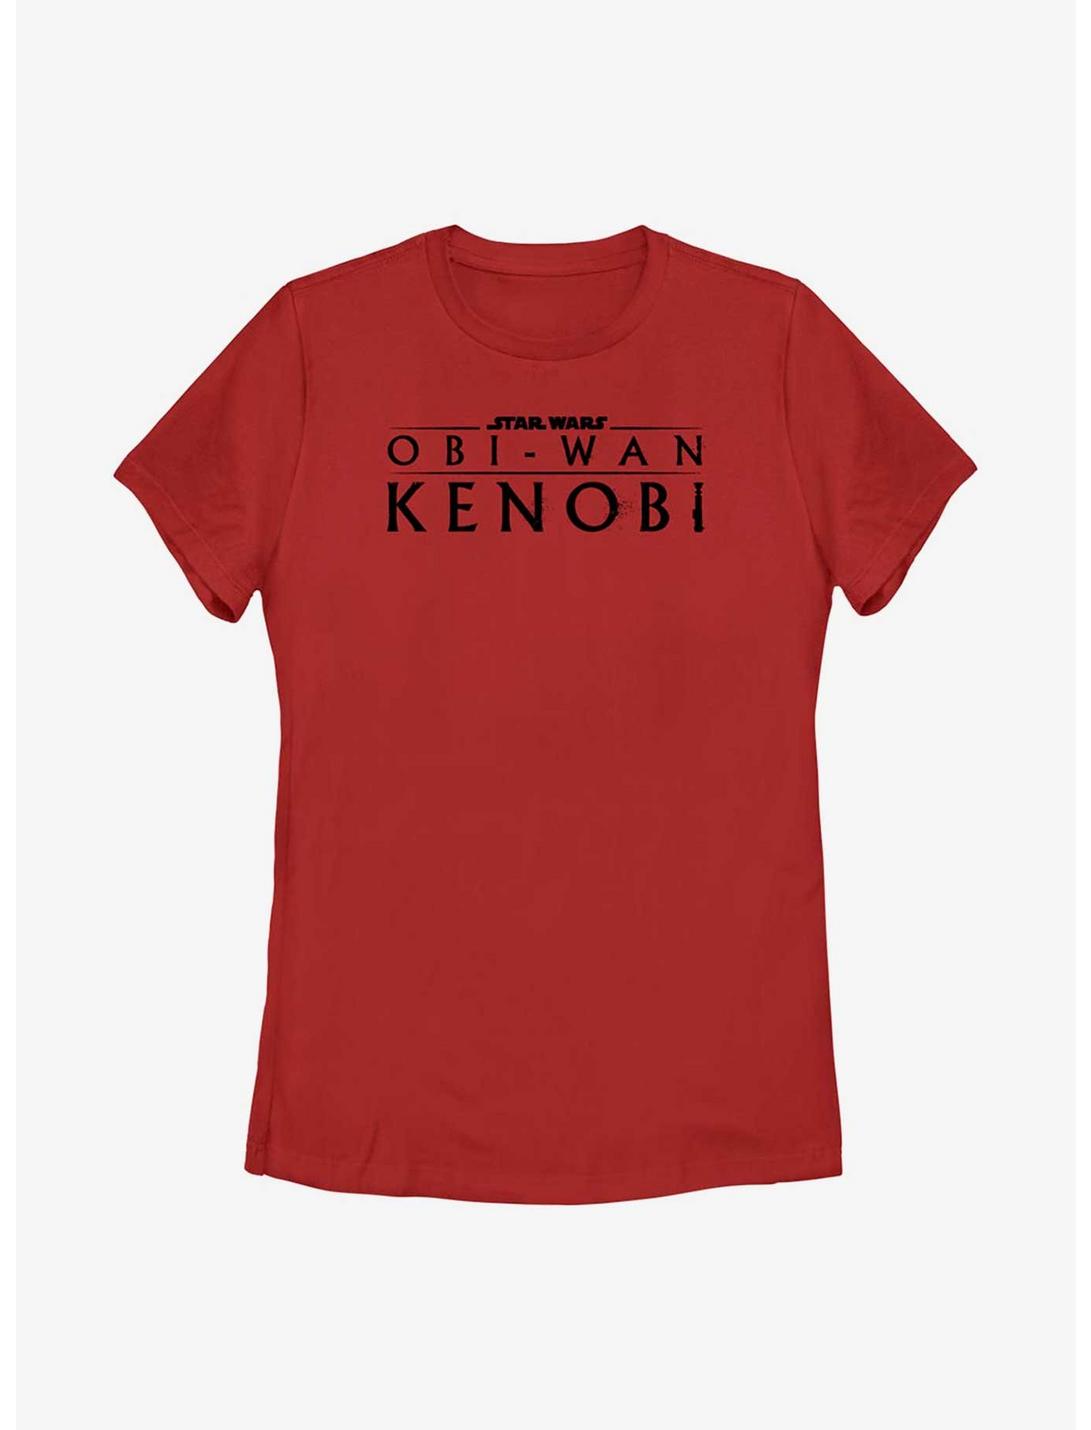 Star Wars Obi-Wan Kenobi Logo Weathered Womens T-Shirt, RED, hi-res